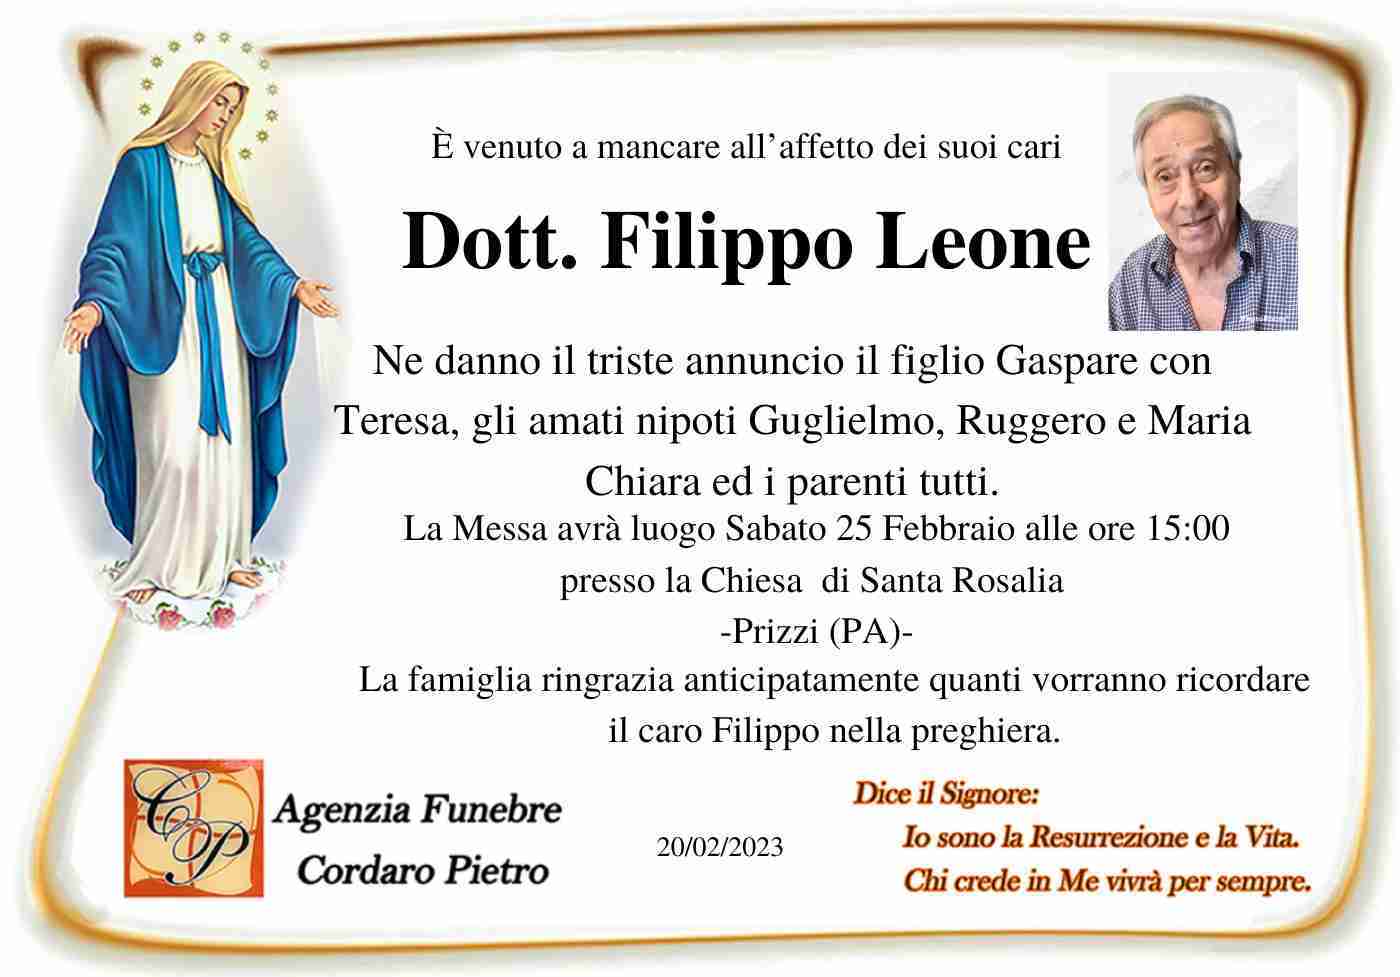 Filippo Leone